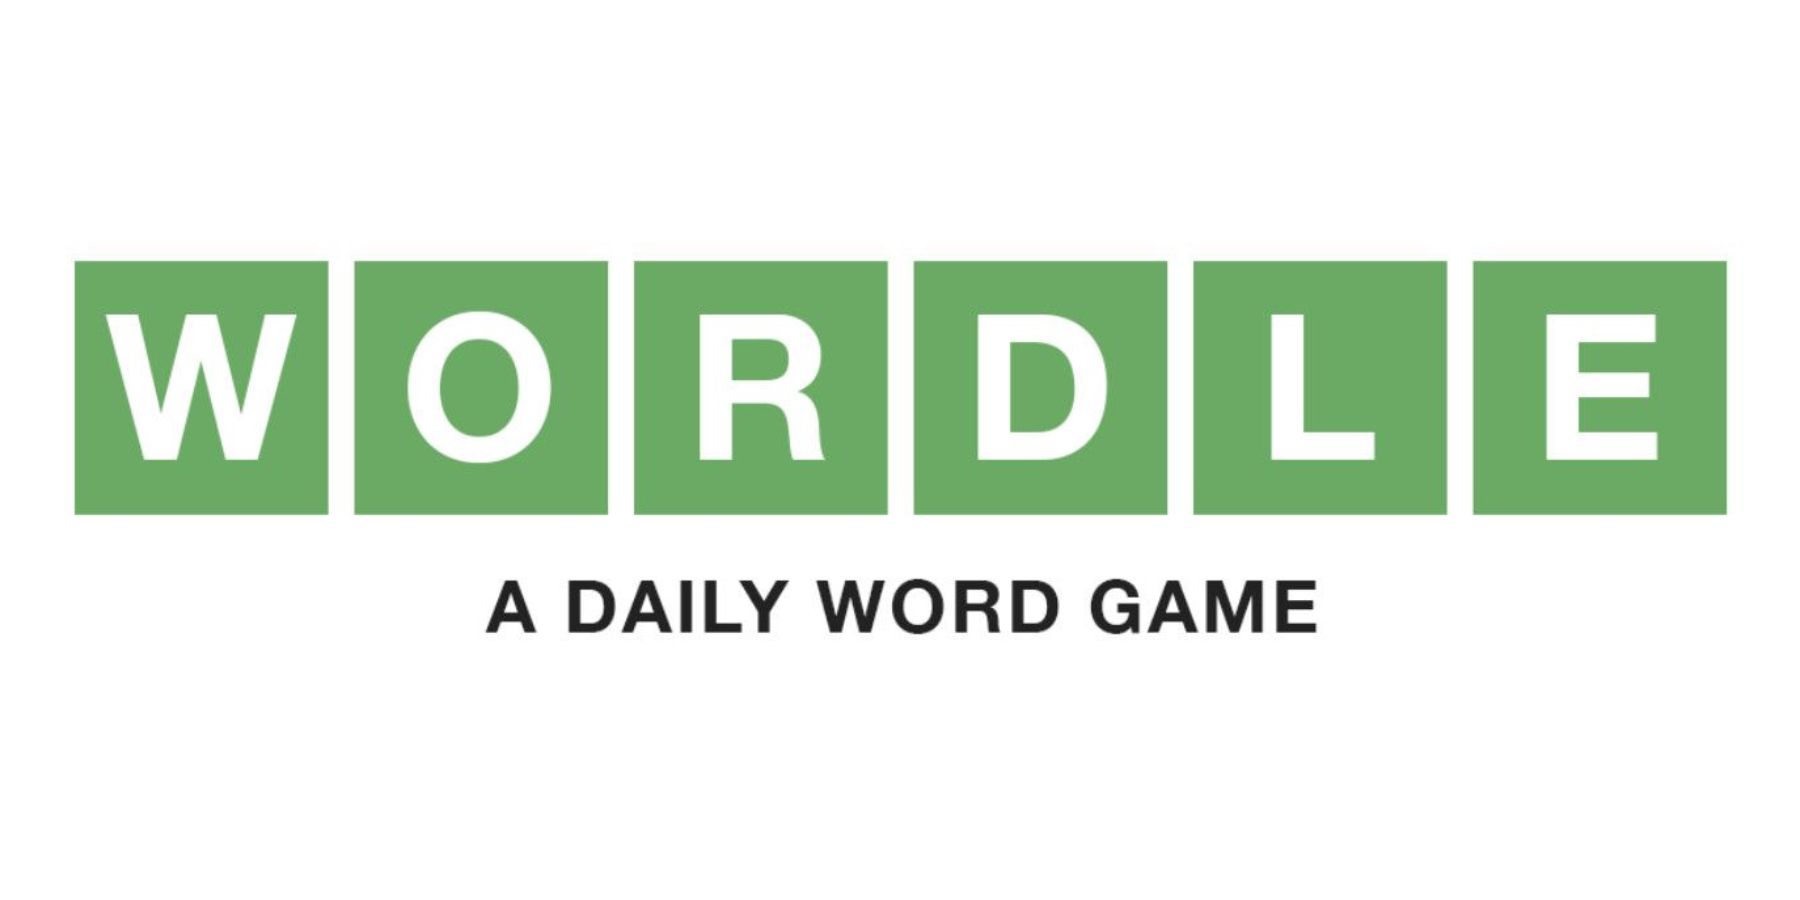 Logo permainan kata harian Wordle